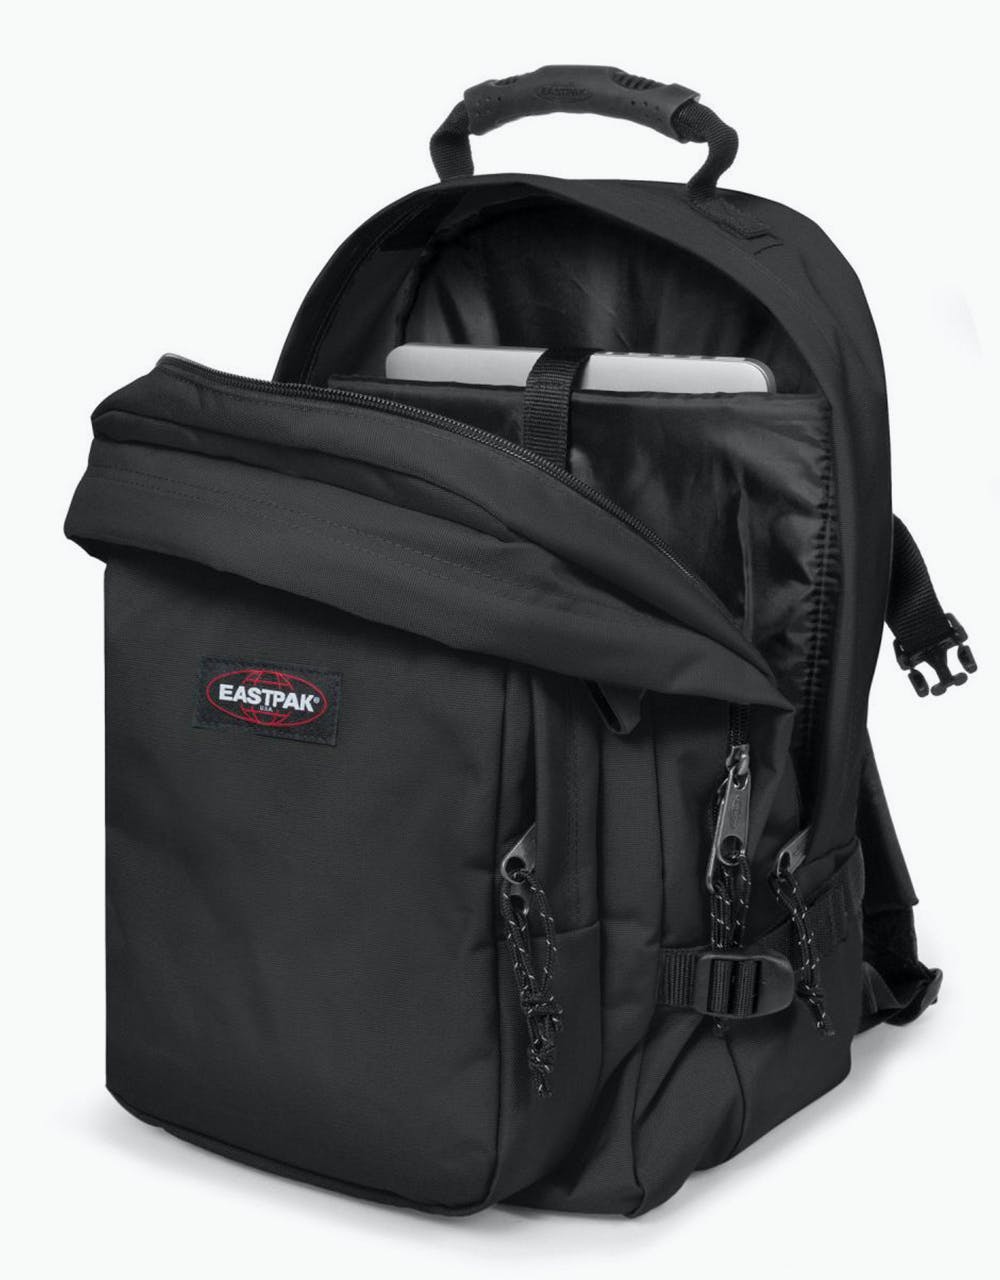 Eastpak Provider Backpack - Black